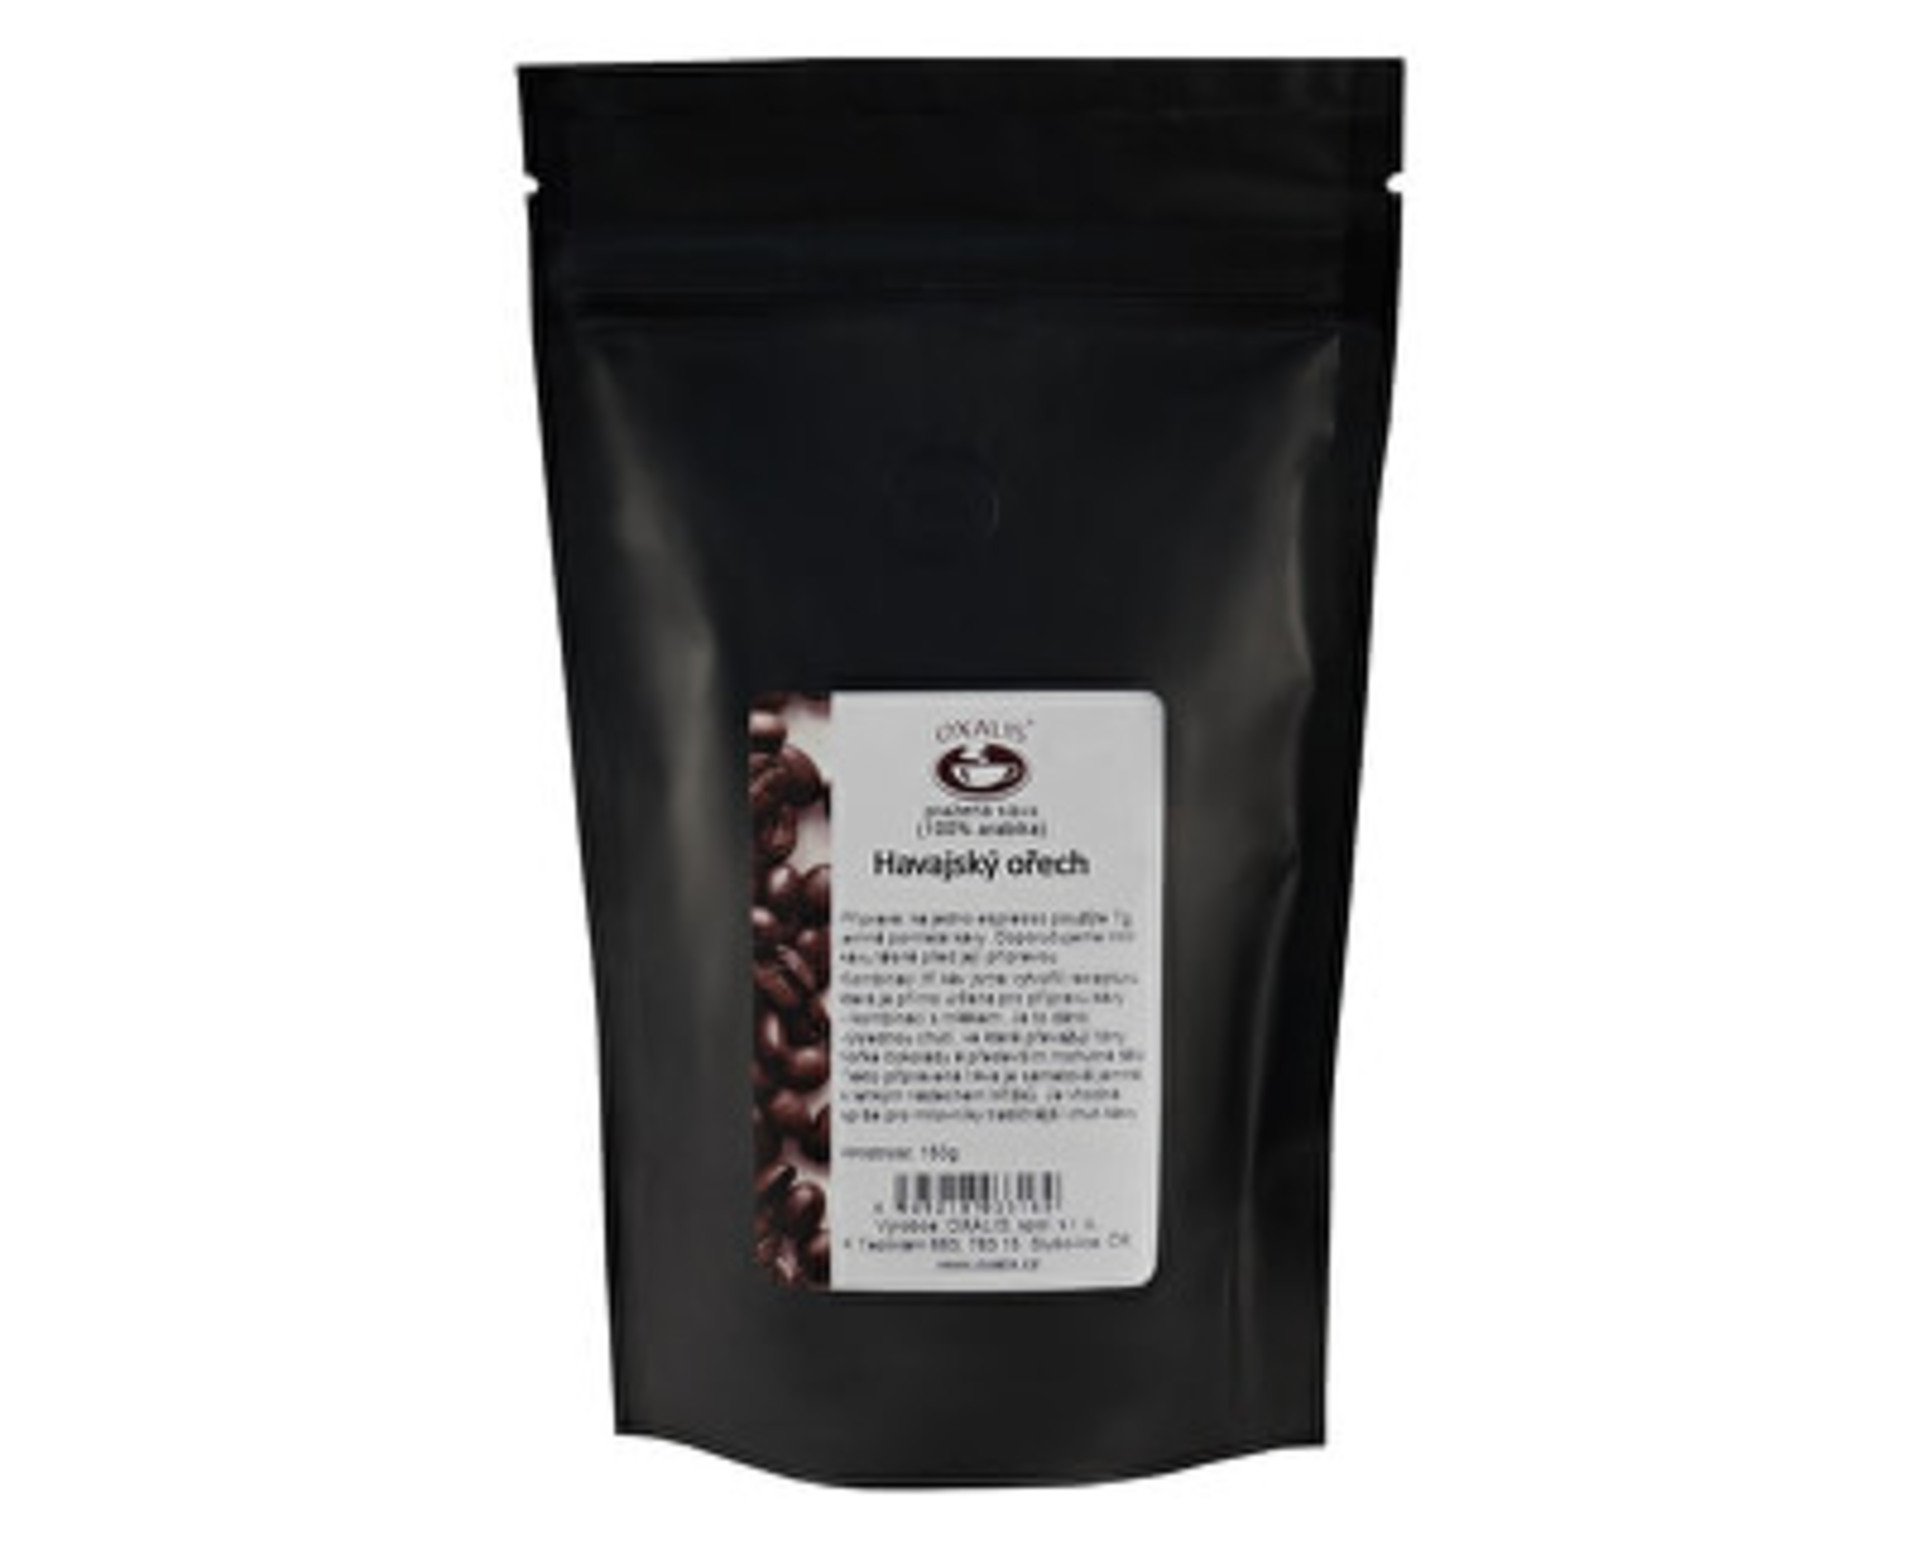 E-shop Oxalis káva aromatizovaná mletá - Havajský orech 150 g